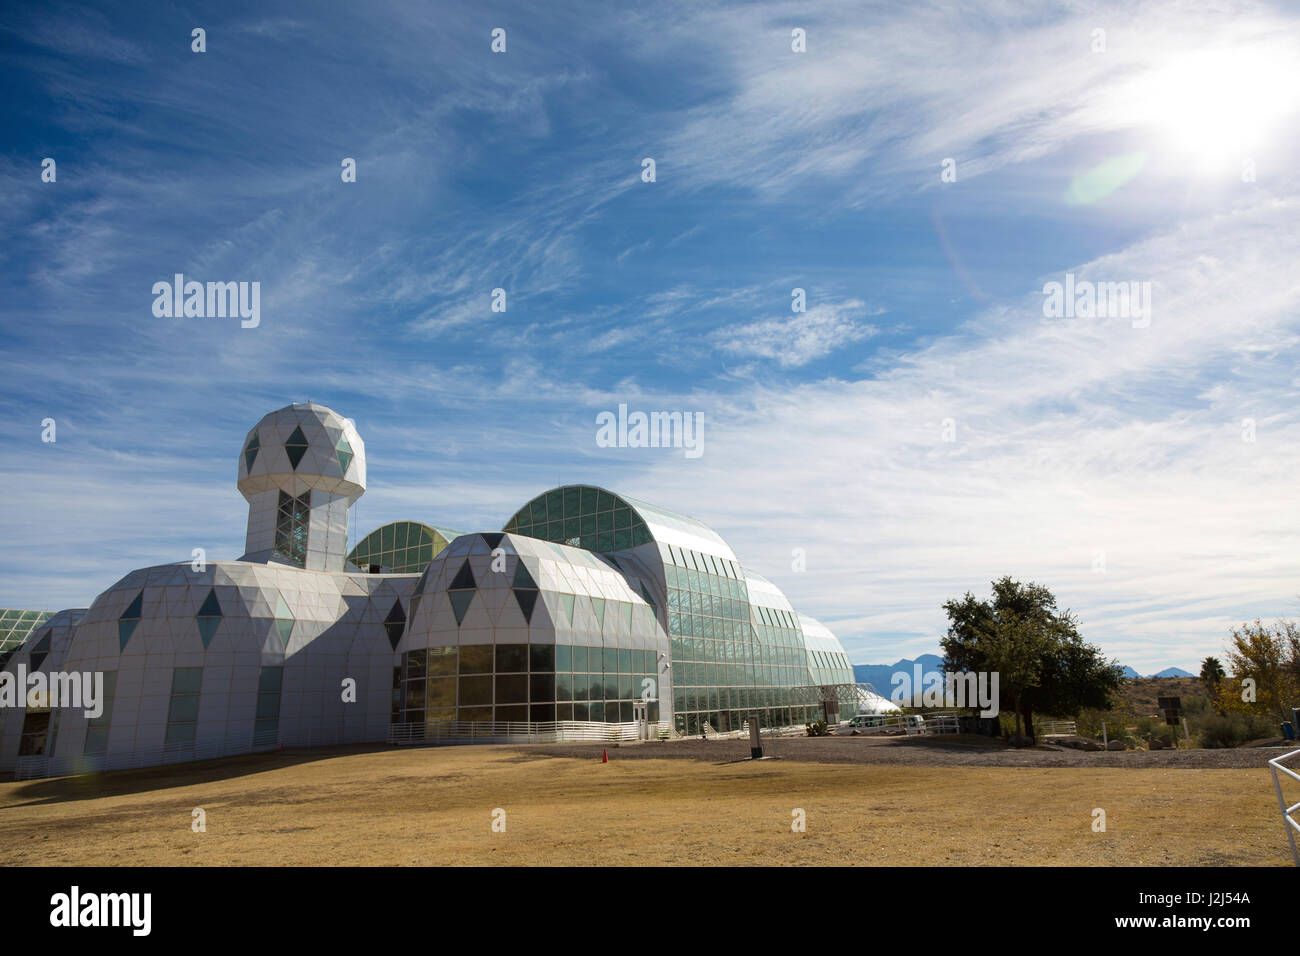 Biosphäre 2, eine Erde Systeme Wissenschaft Forschungseinrichtung seit 2011 im Besitz von der University of Arizona. Tucson, Arizona, USA. Stockfoto